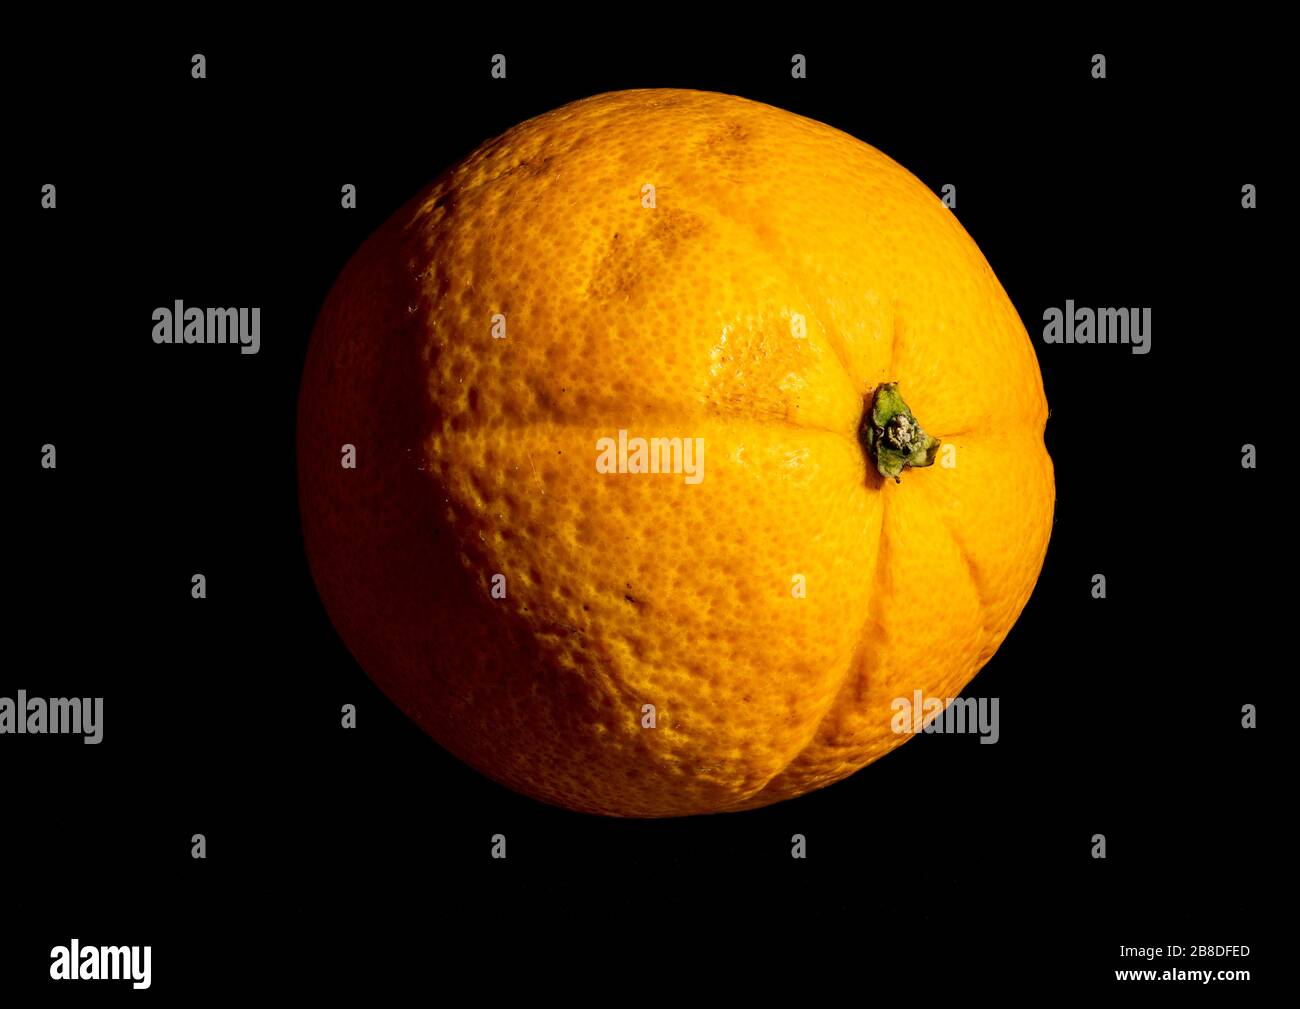 Gros plan sur une image orange organique à l'aide d'une technique d'empilage de la mise au point qui permet de mettre les sujets au point de manière nette de l'avant vers l'arrière Banque D'Images